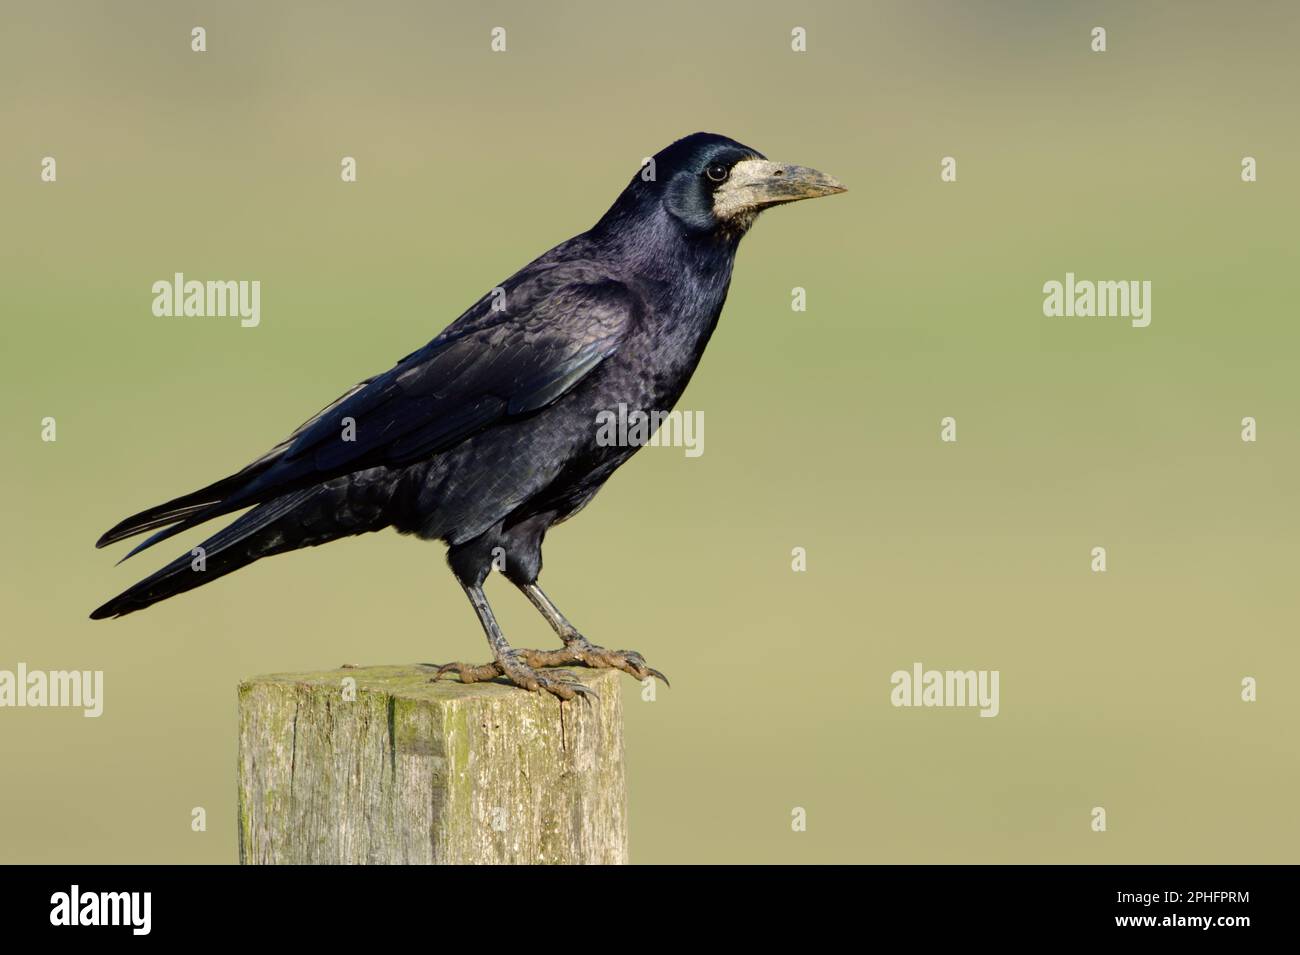 plumage bleu chatoyant... Rook ( Corvus frugilegus ) perché sur un poste de clôture. Banque D'Images